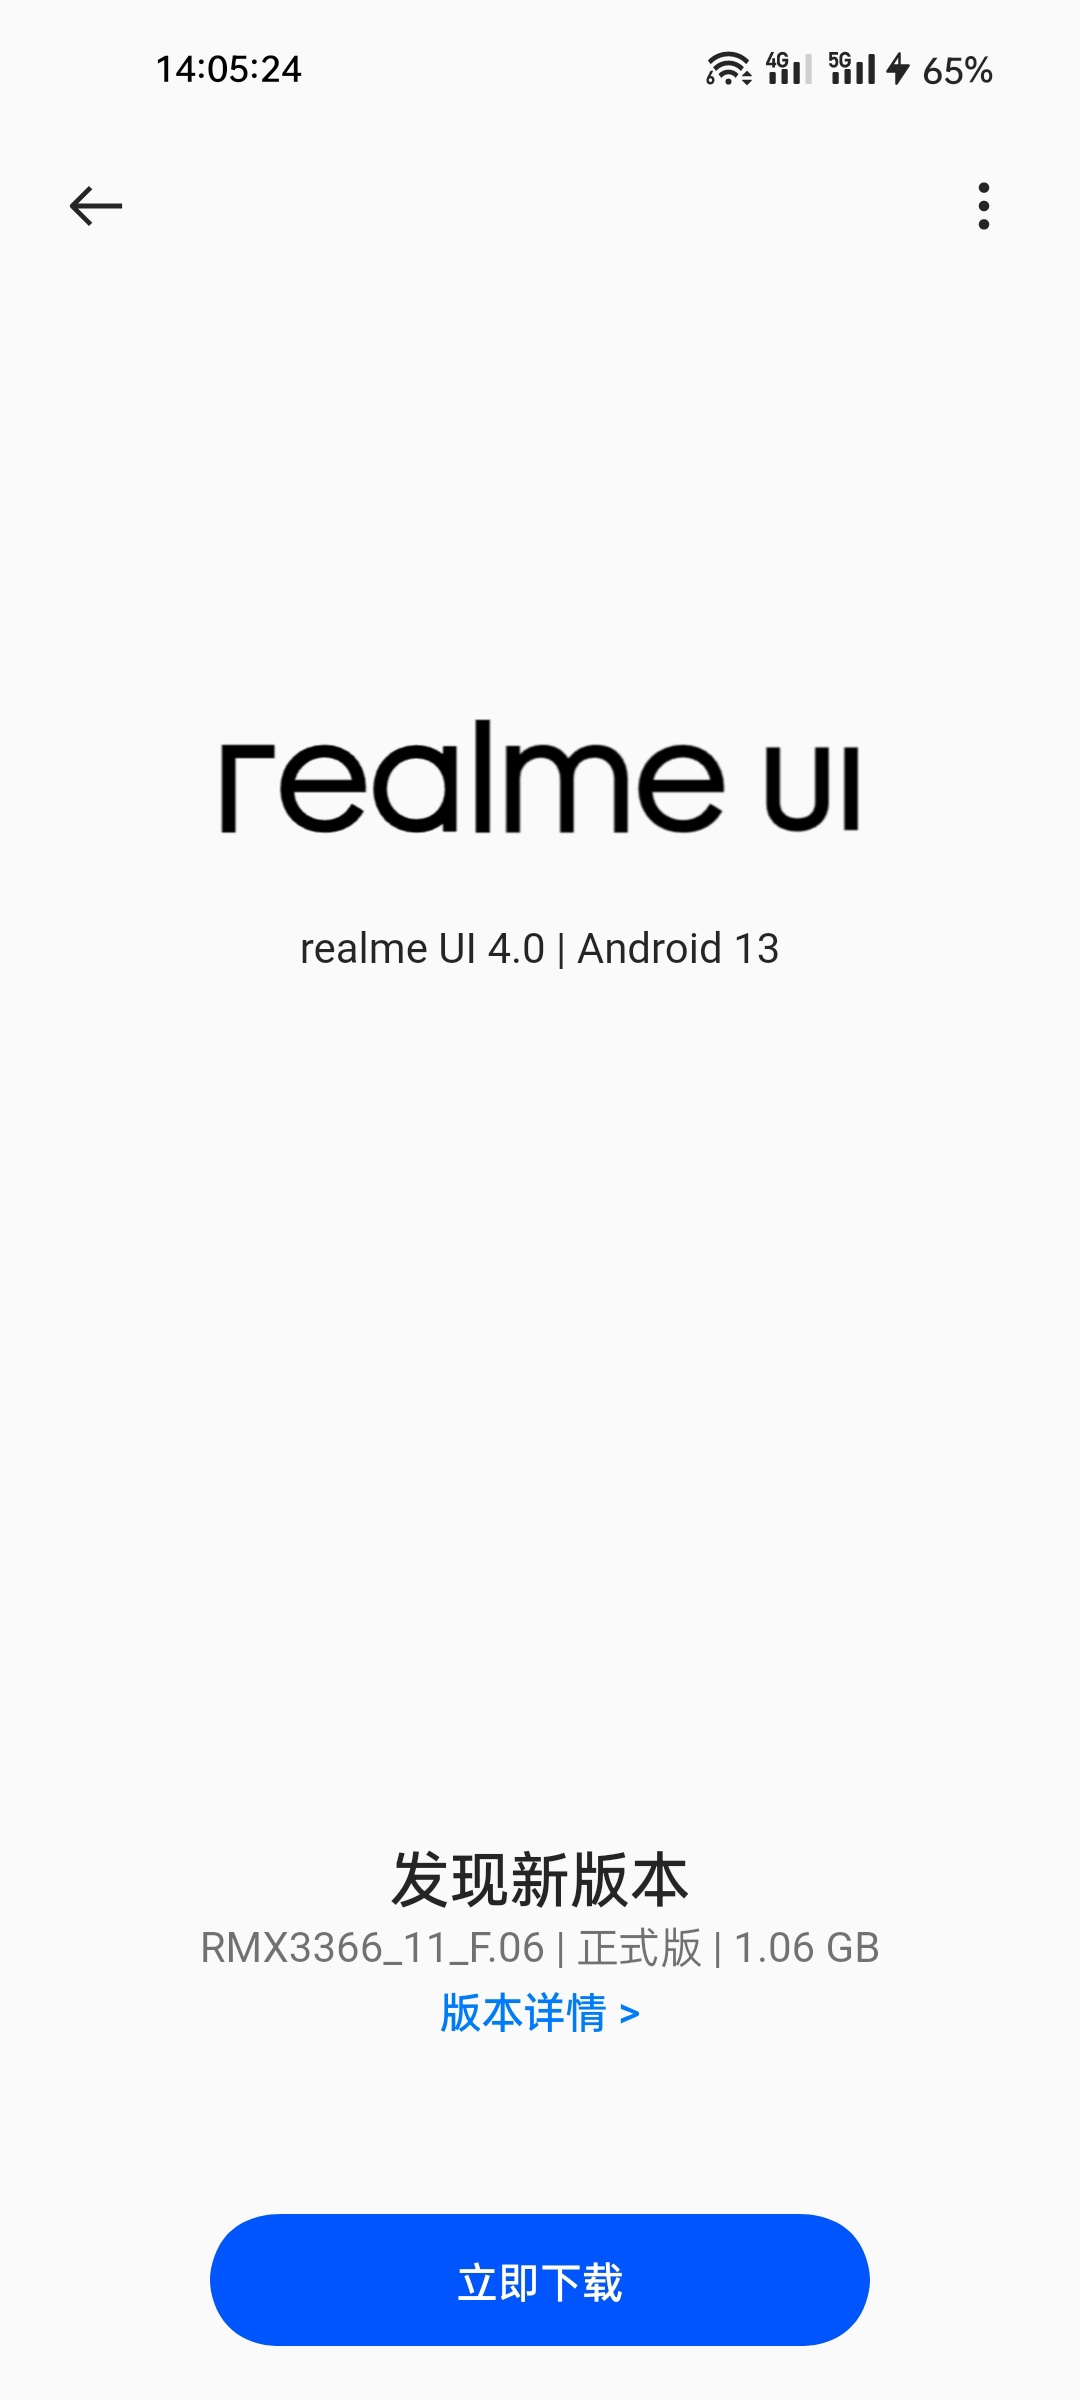 真我GT大师探索版推送realme UI 4.0正式版